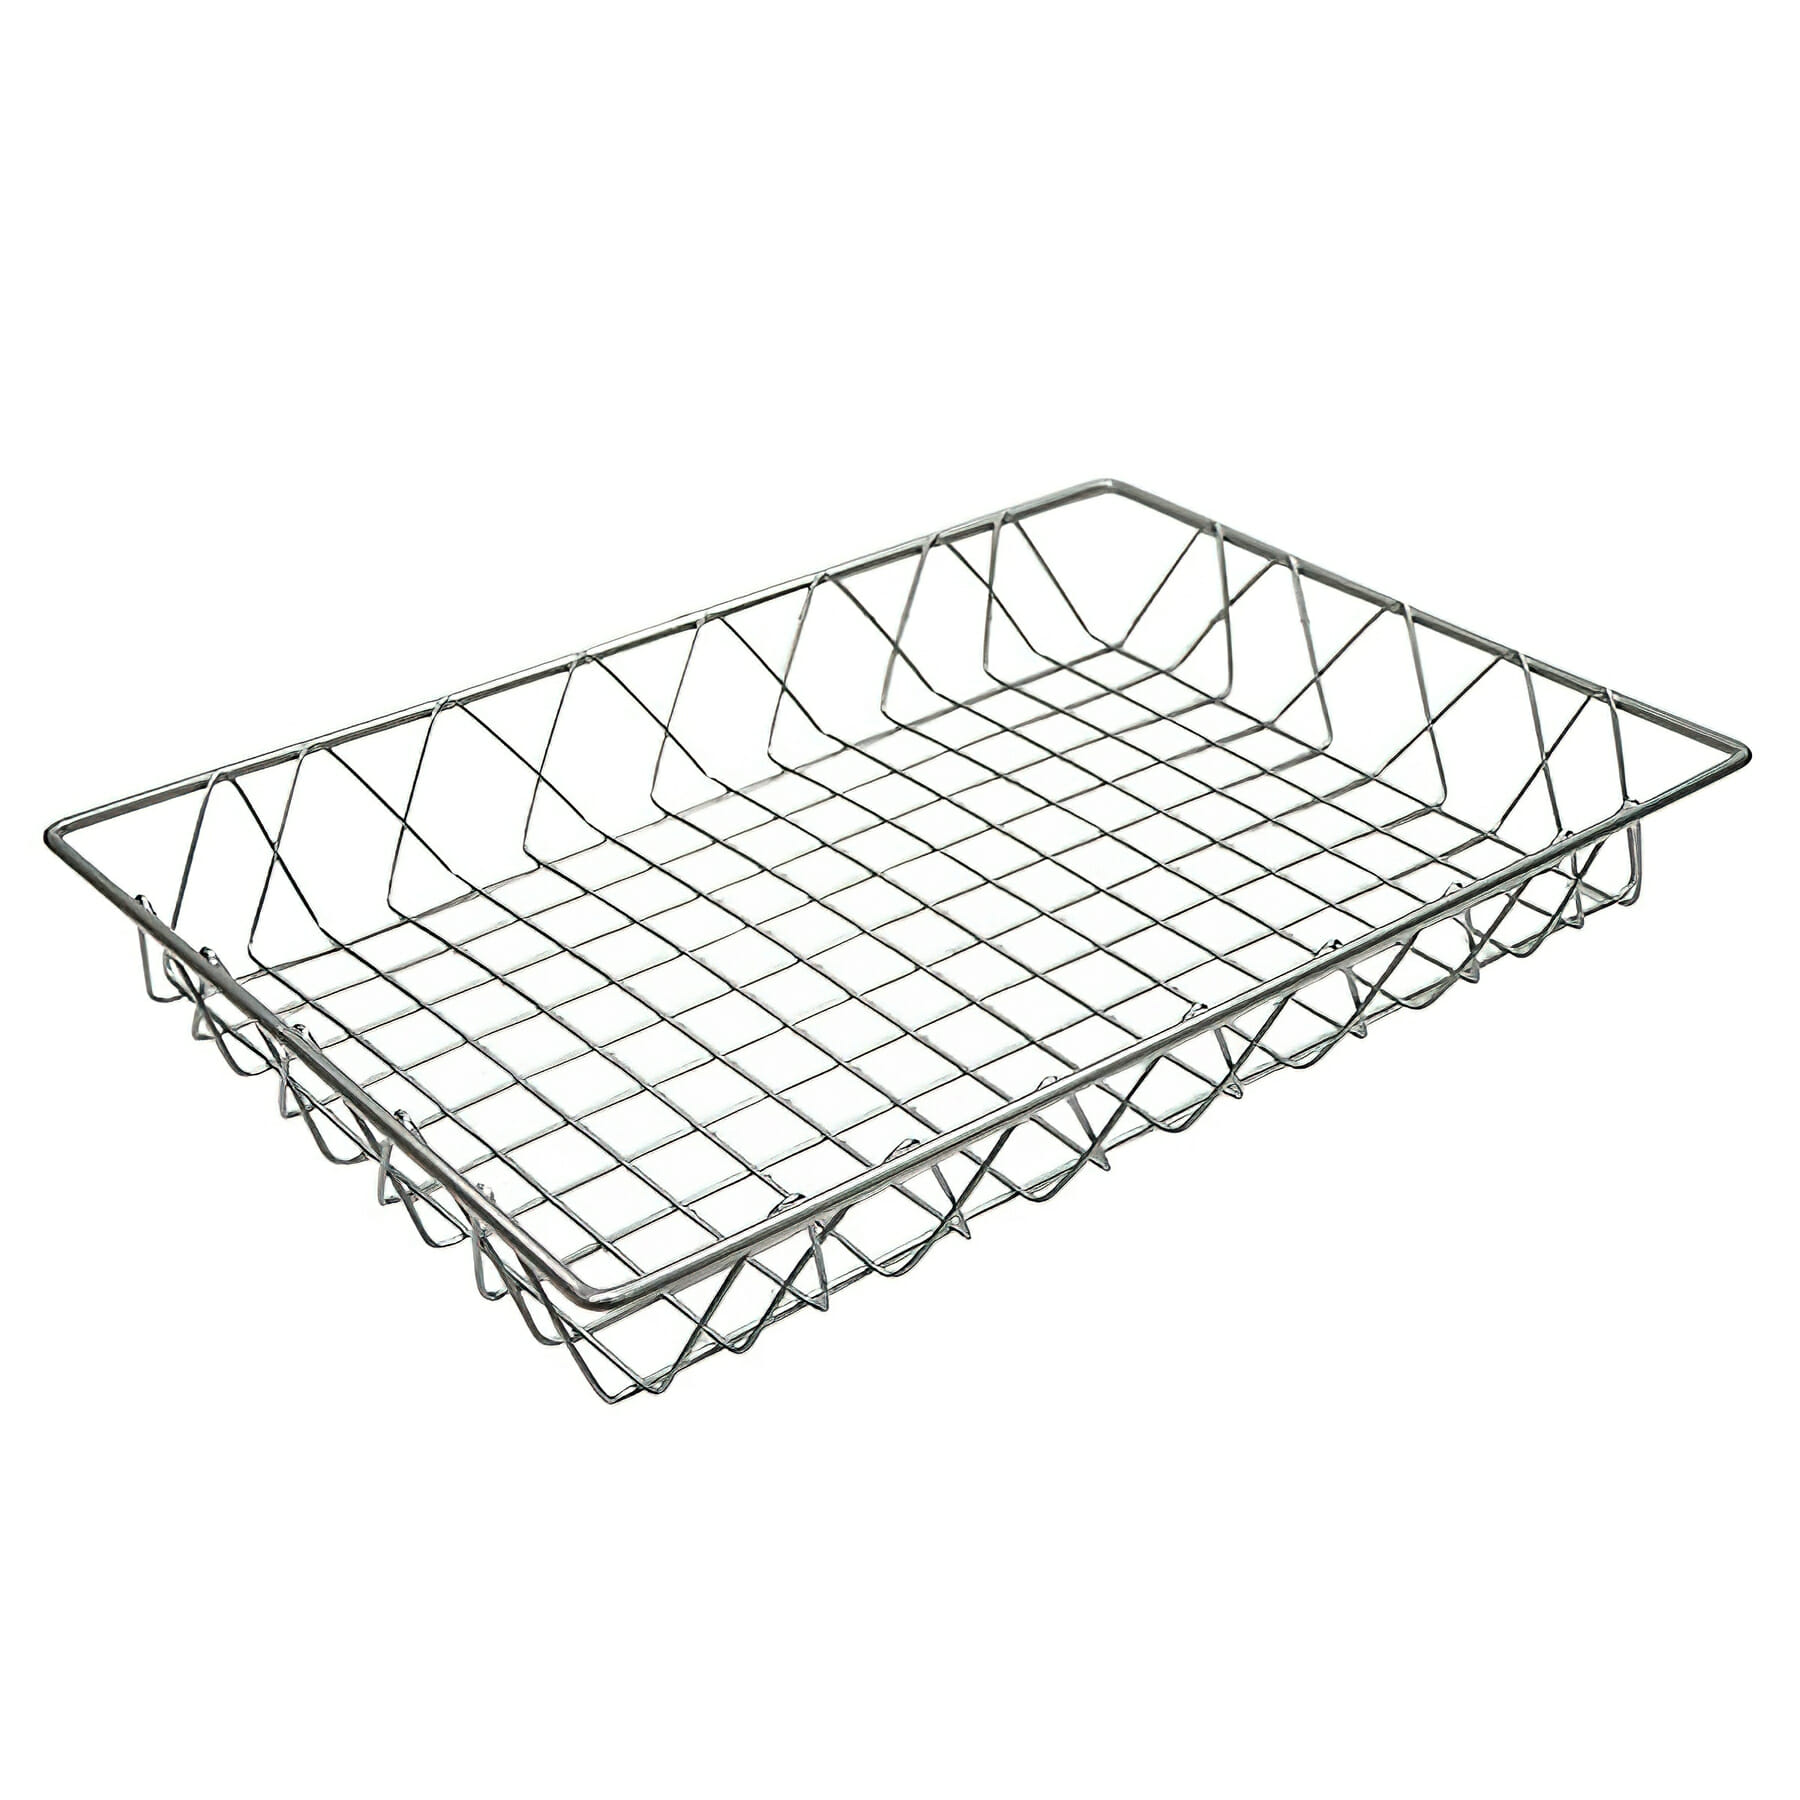 18" x 12" Rectangular Wire Pastry Basket, 2" deep (fits IR-900, IR-902, IR-906, IR-907, IR-951, IR-951T, IR-952, IR-952T)